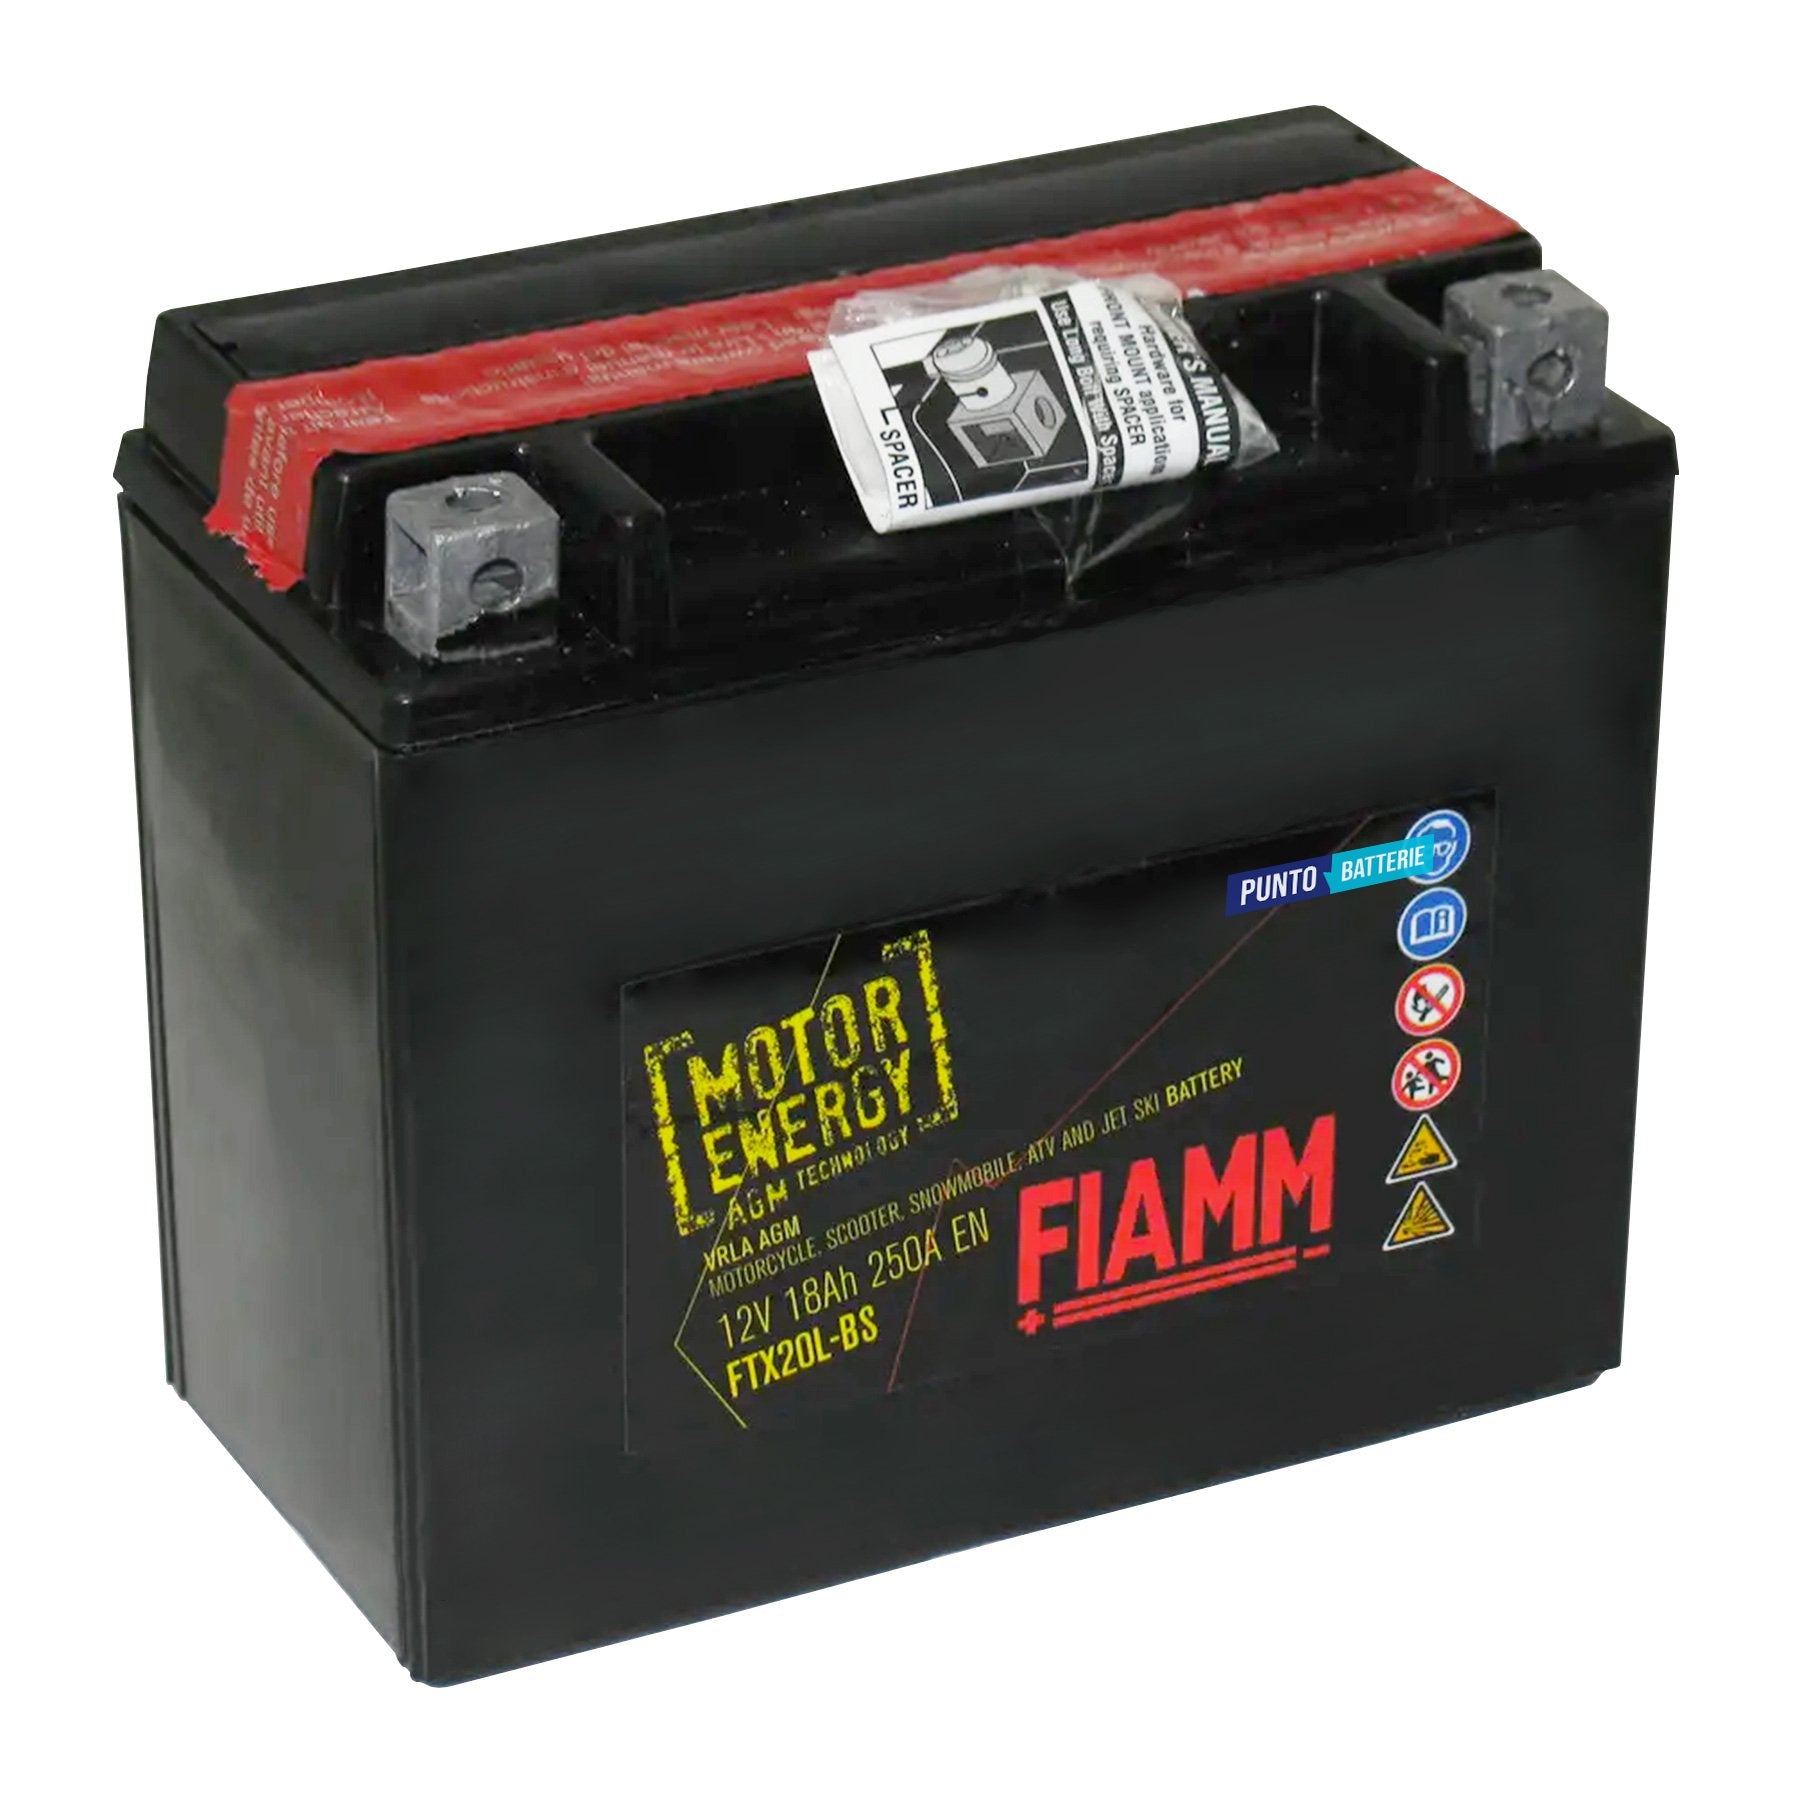 Batteria originale Fiamm Motor Energy AGM FTX20CH-BS, dimensioni 150 x 87 x 161, polo positivo a sinistra, 12 volt, 18 amperora, 270 ampere. Batteria per moto, scooter e powersport.